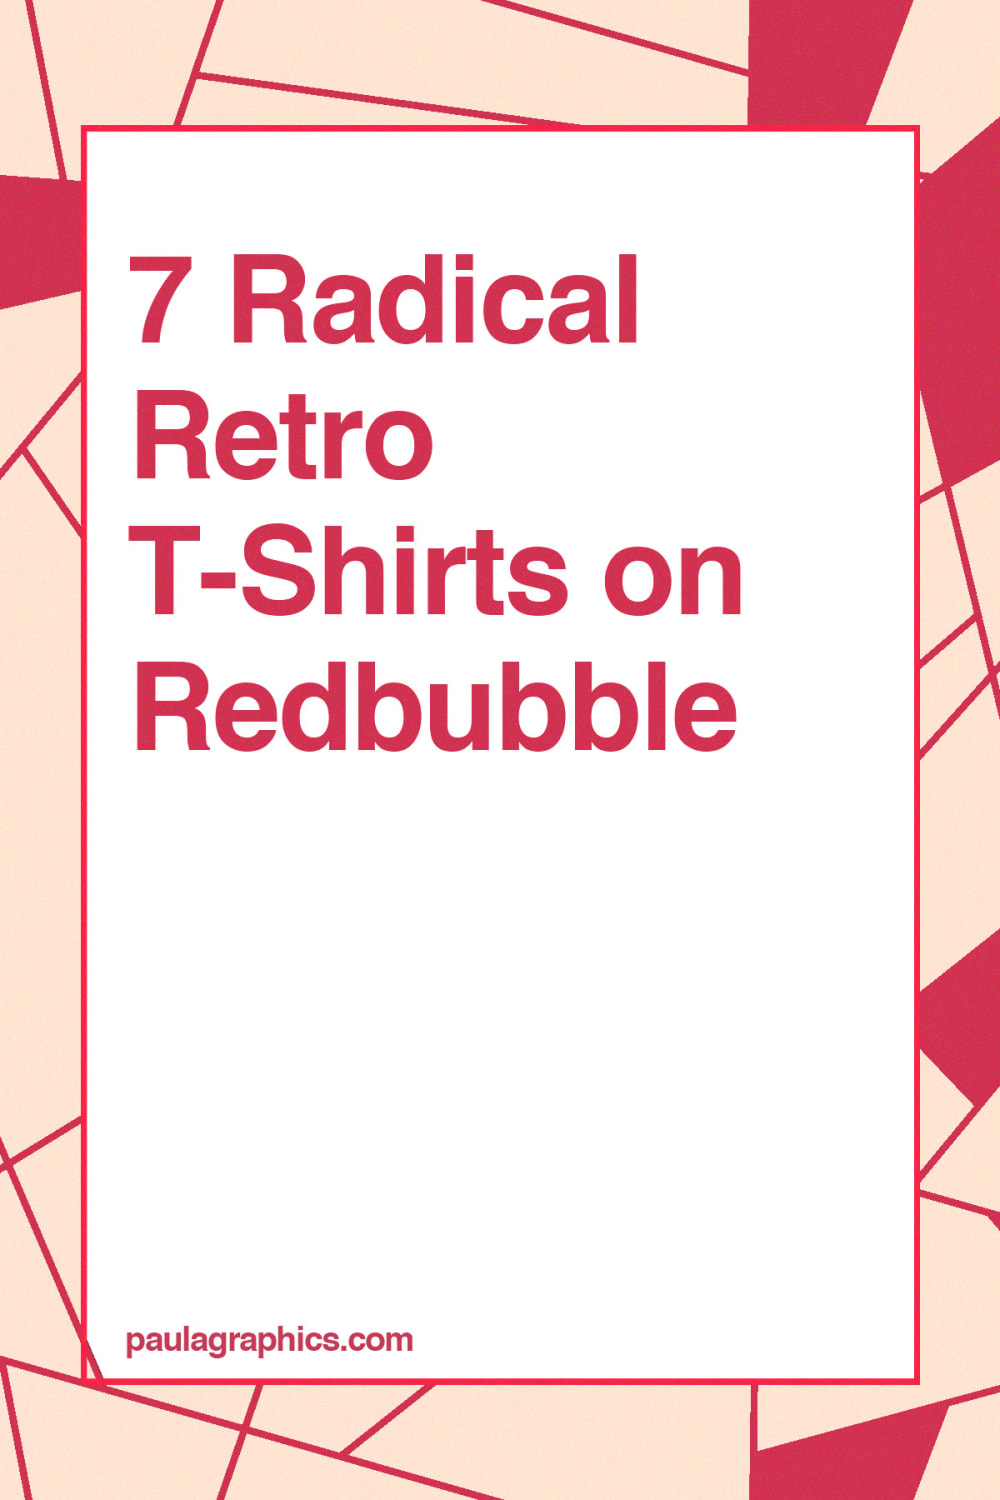 7 Radical Retro T-Shirts on Redbubble